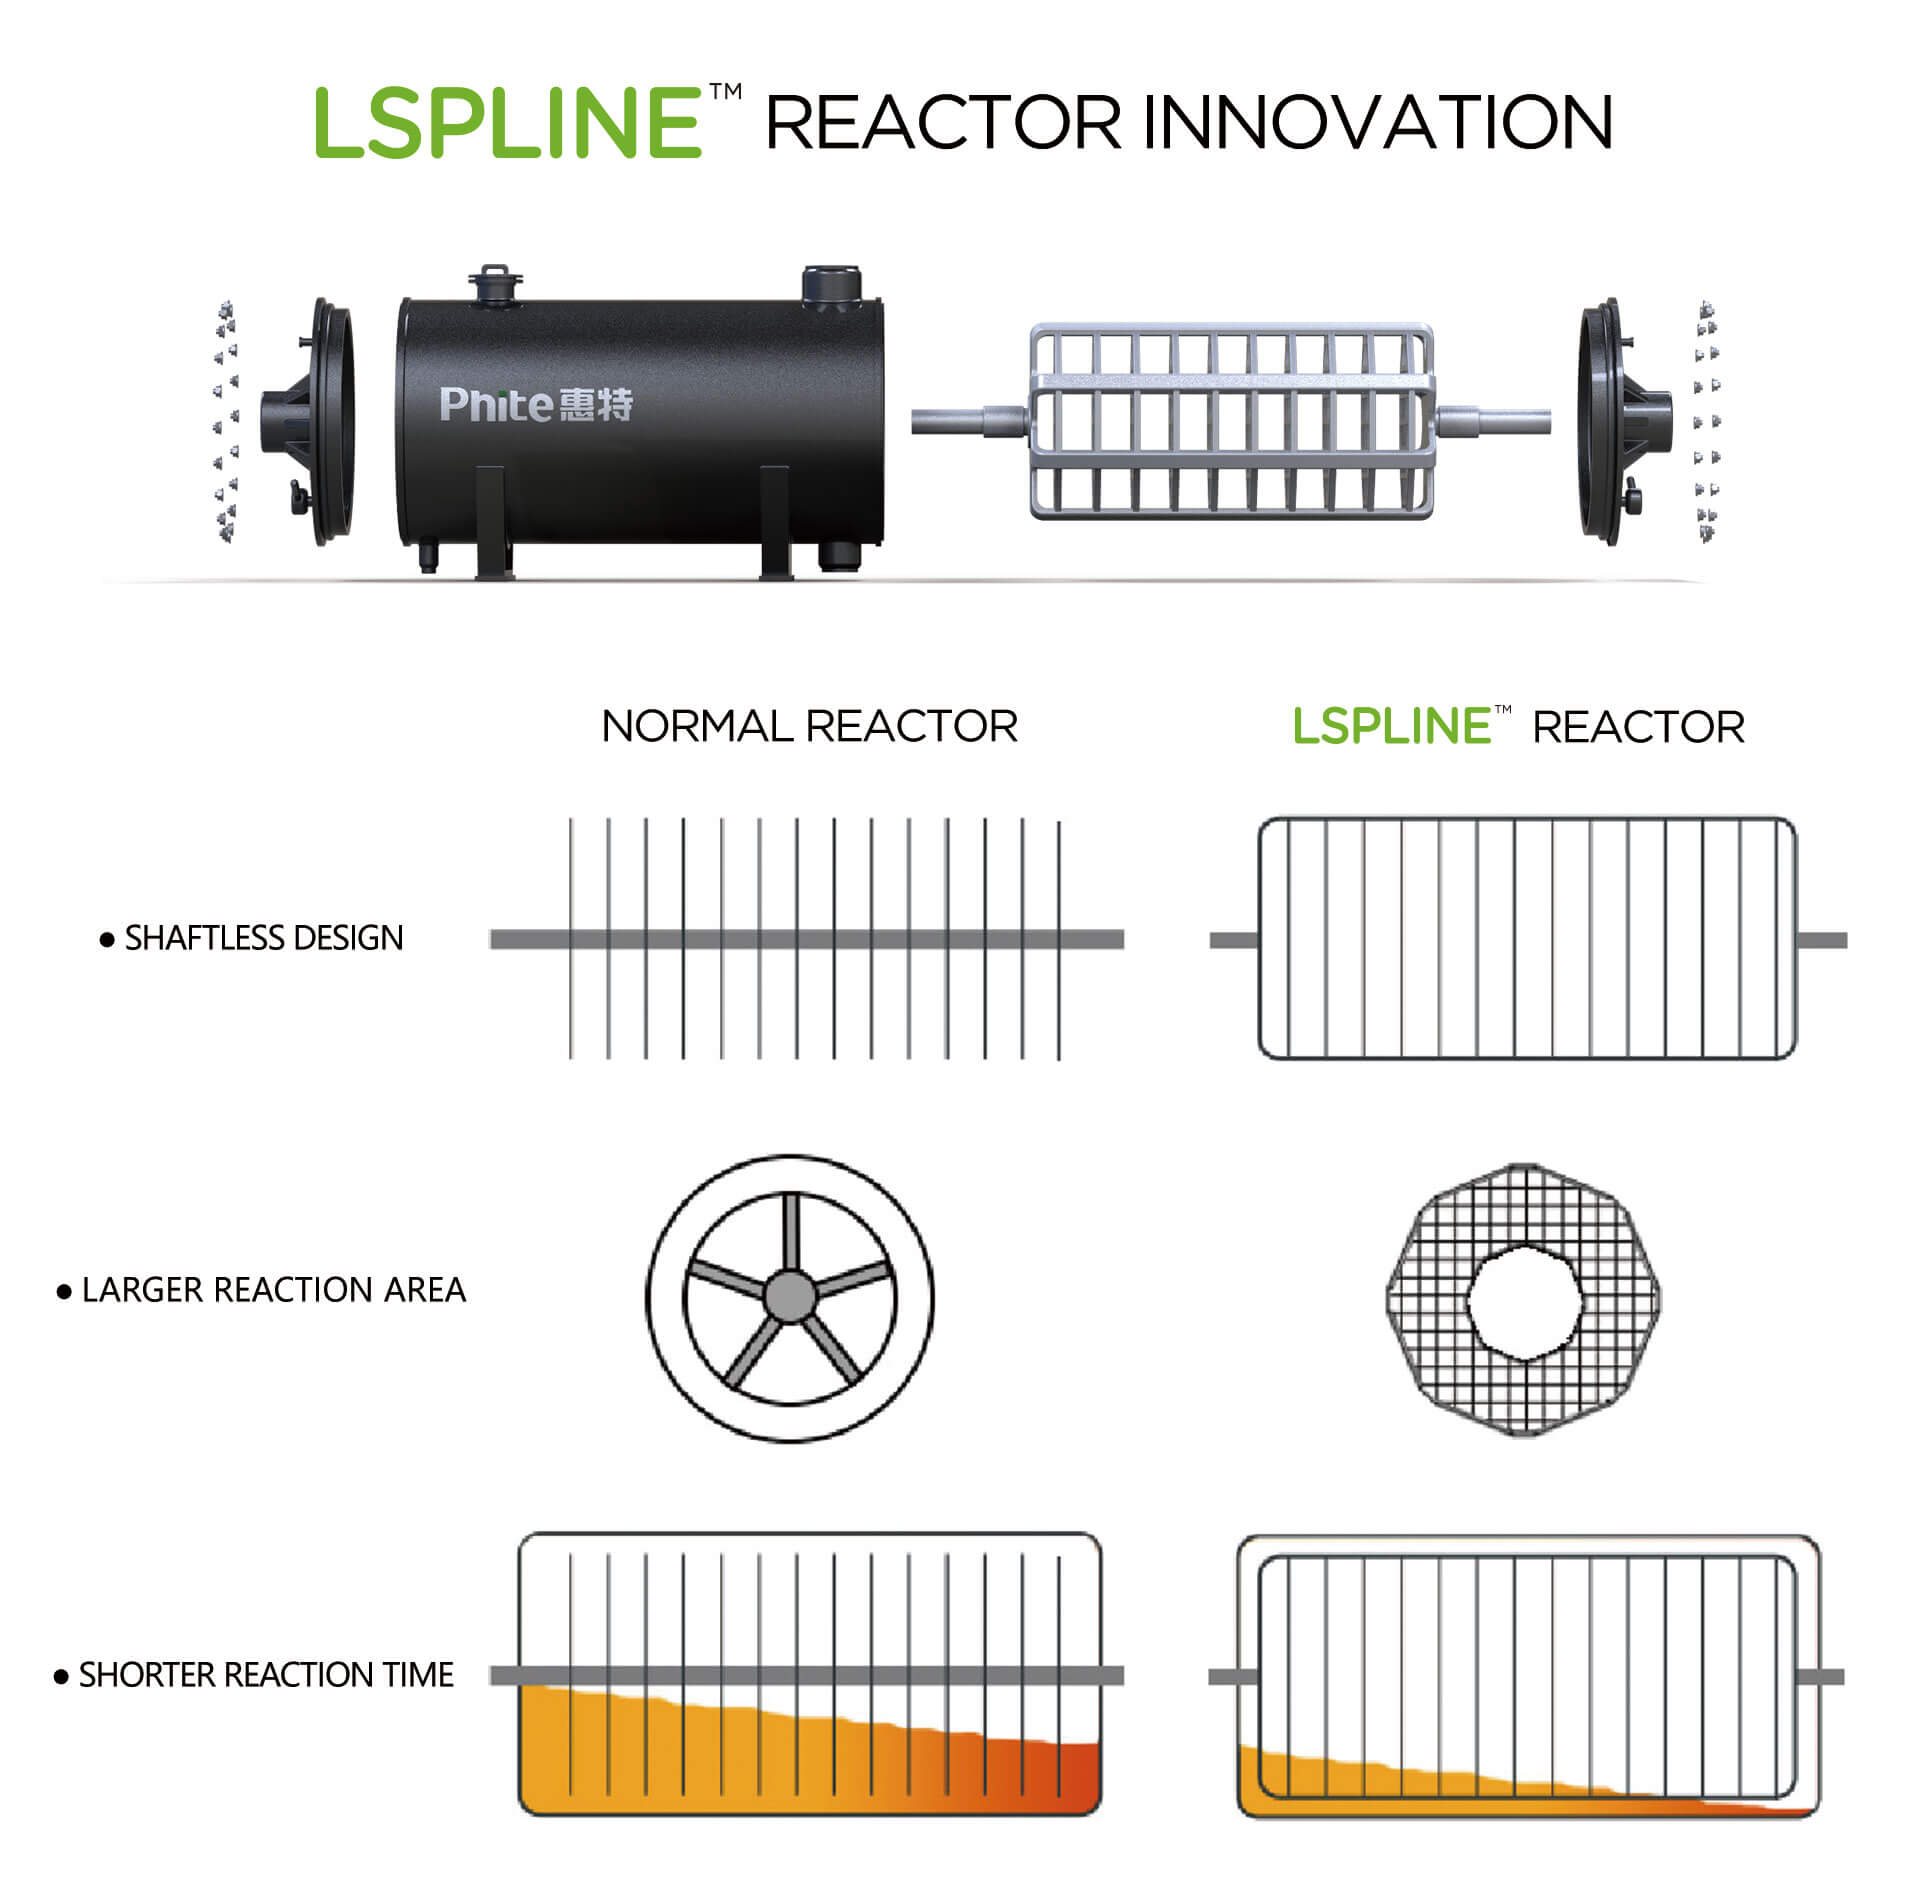 LSPLINE reactor innovation